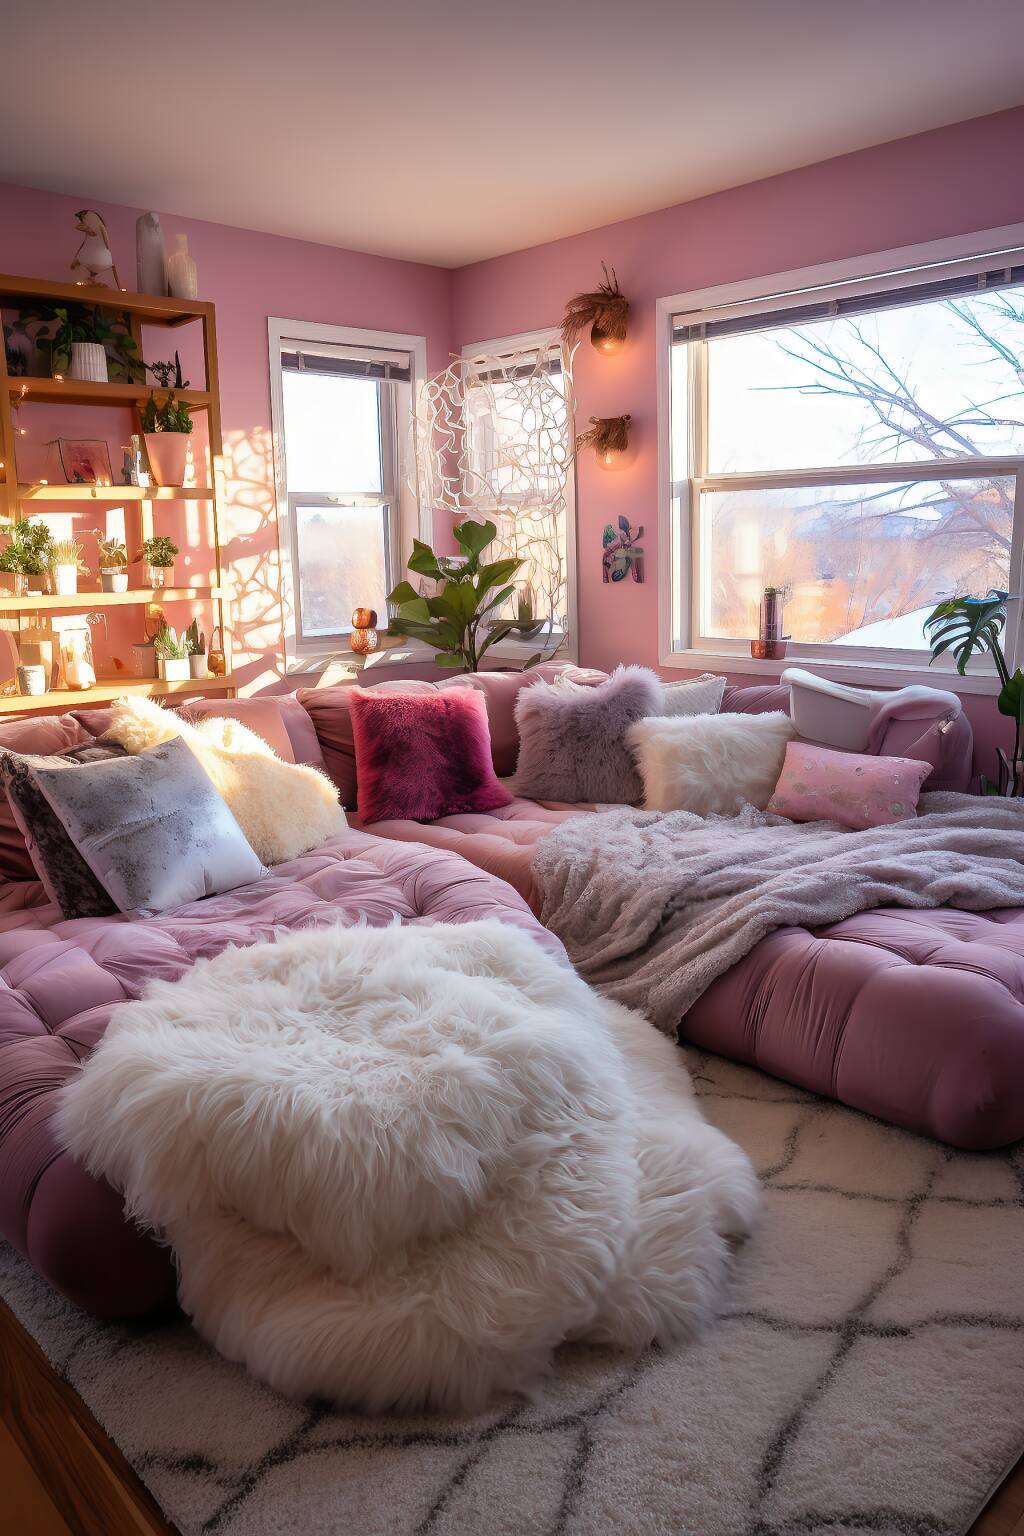 Ein Gemütliches, Romantisches Bohème-Wohnzimmer Mit Pinkfarbenen Plüschsesseln, Weichen Stoffen Und Einer Reihe Von Zimmerpflanzen In Einem Warmen, Sonnendurchfluteten Raum.